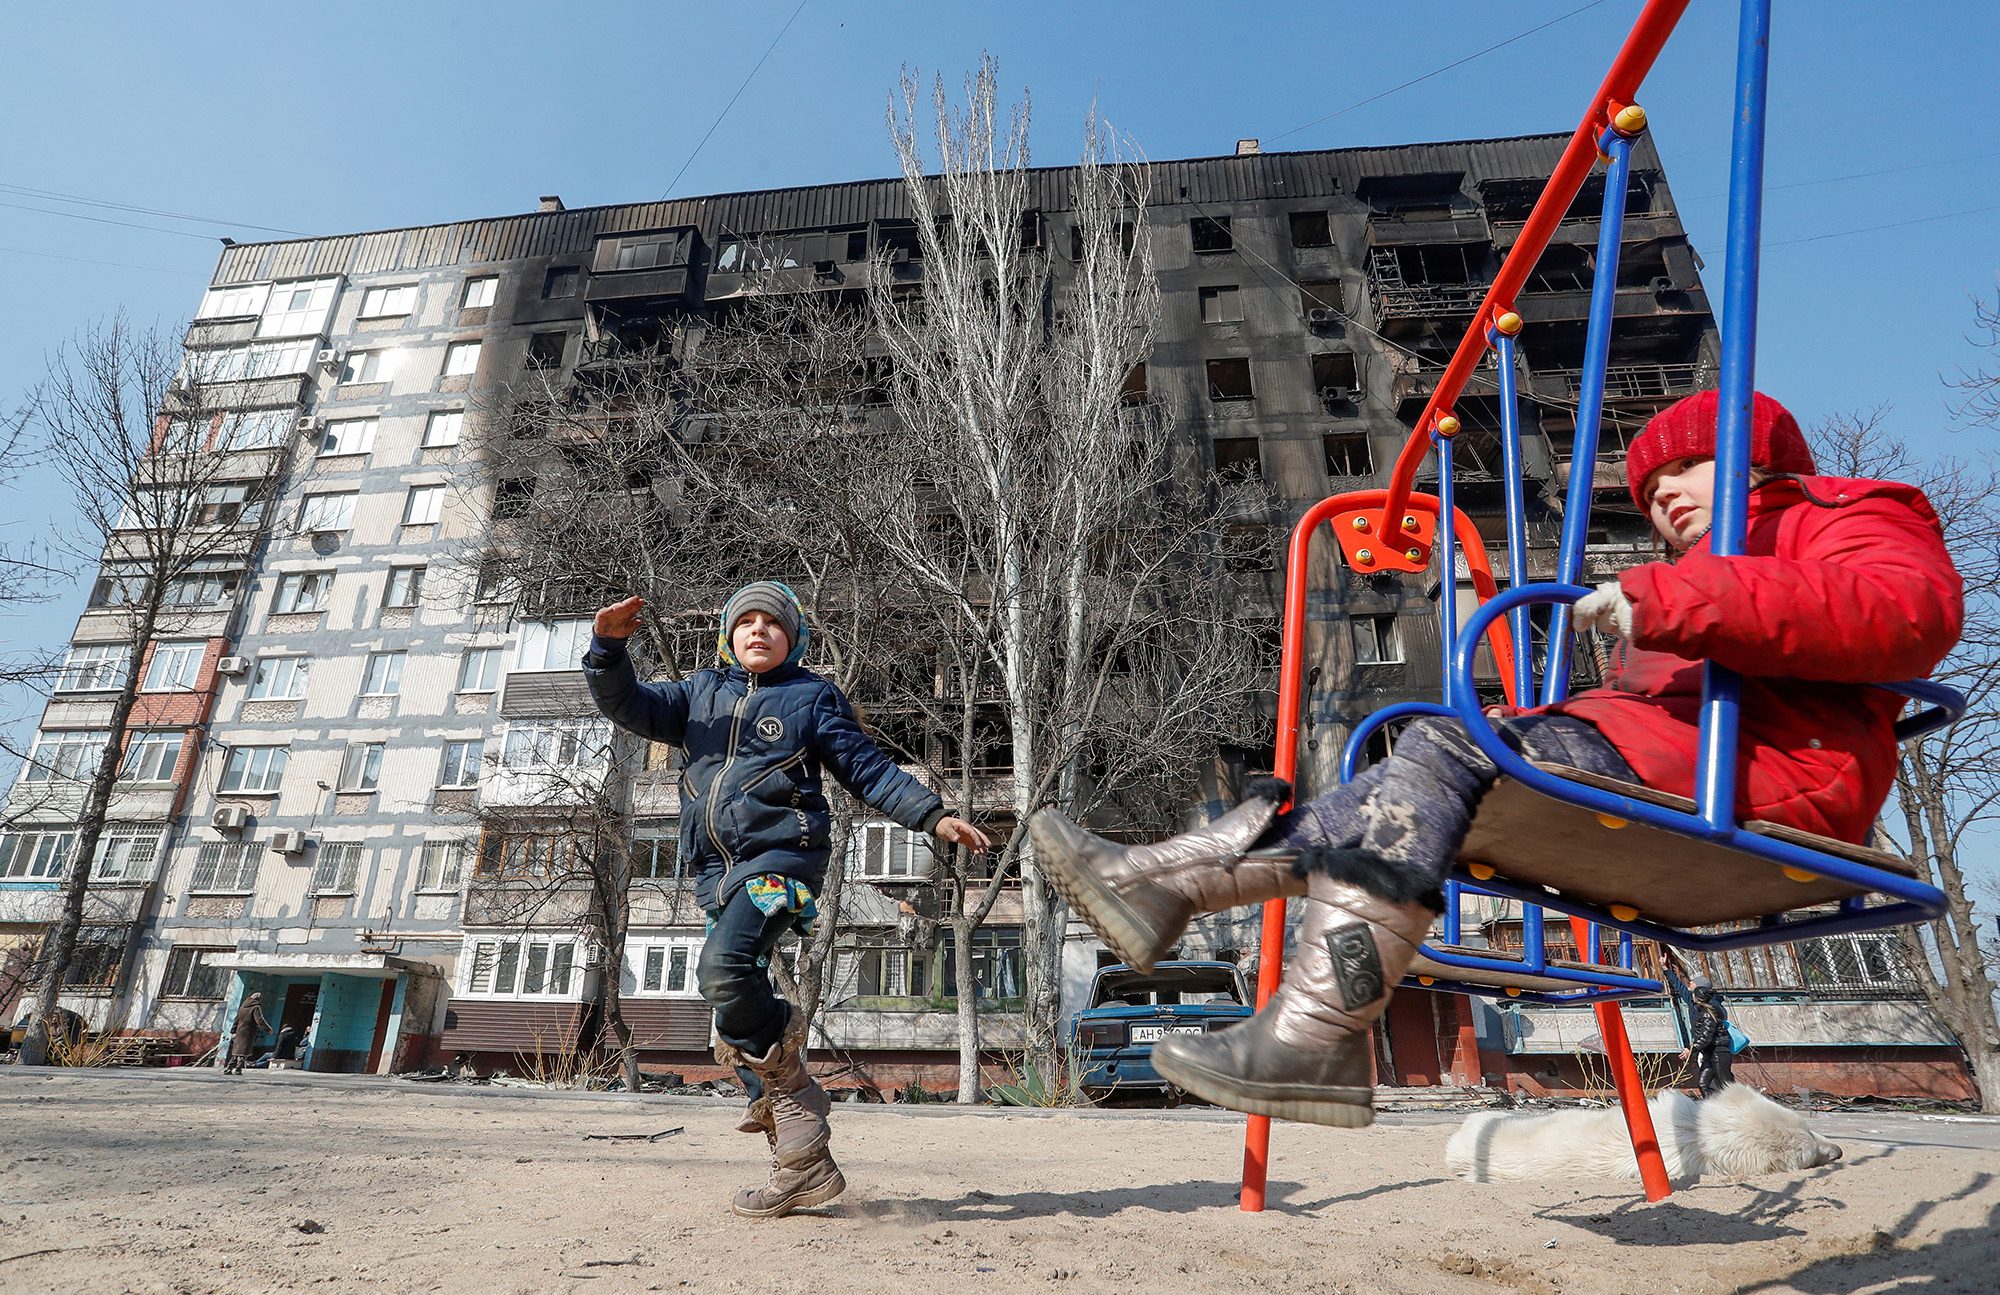 Kinder spielen am 23. März vor einem beschädigten Gebäude im südlichen Hafen von Mariupol, Ukraine.